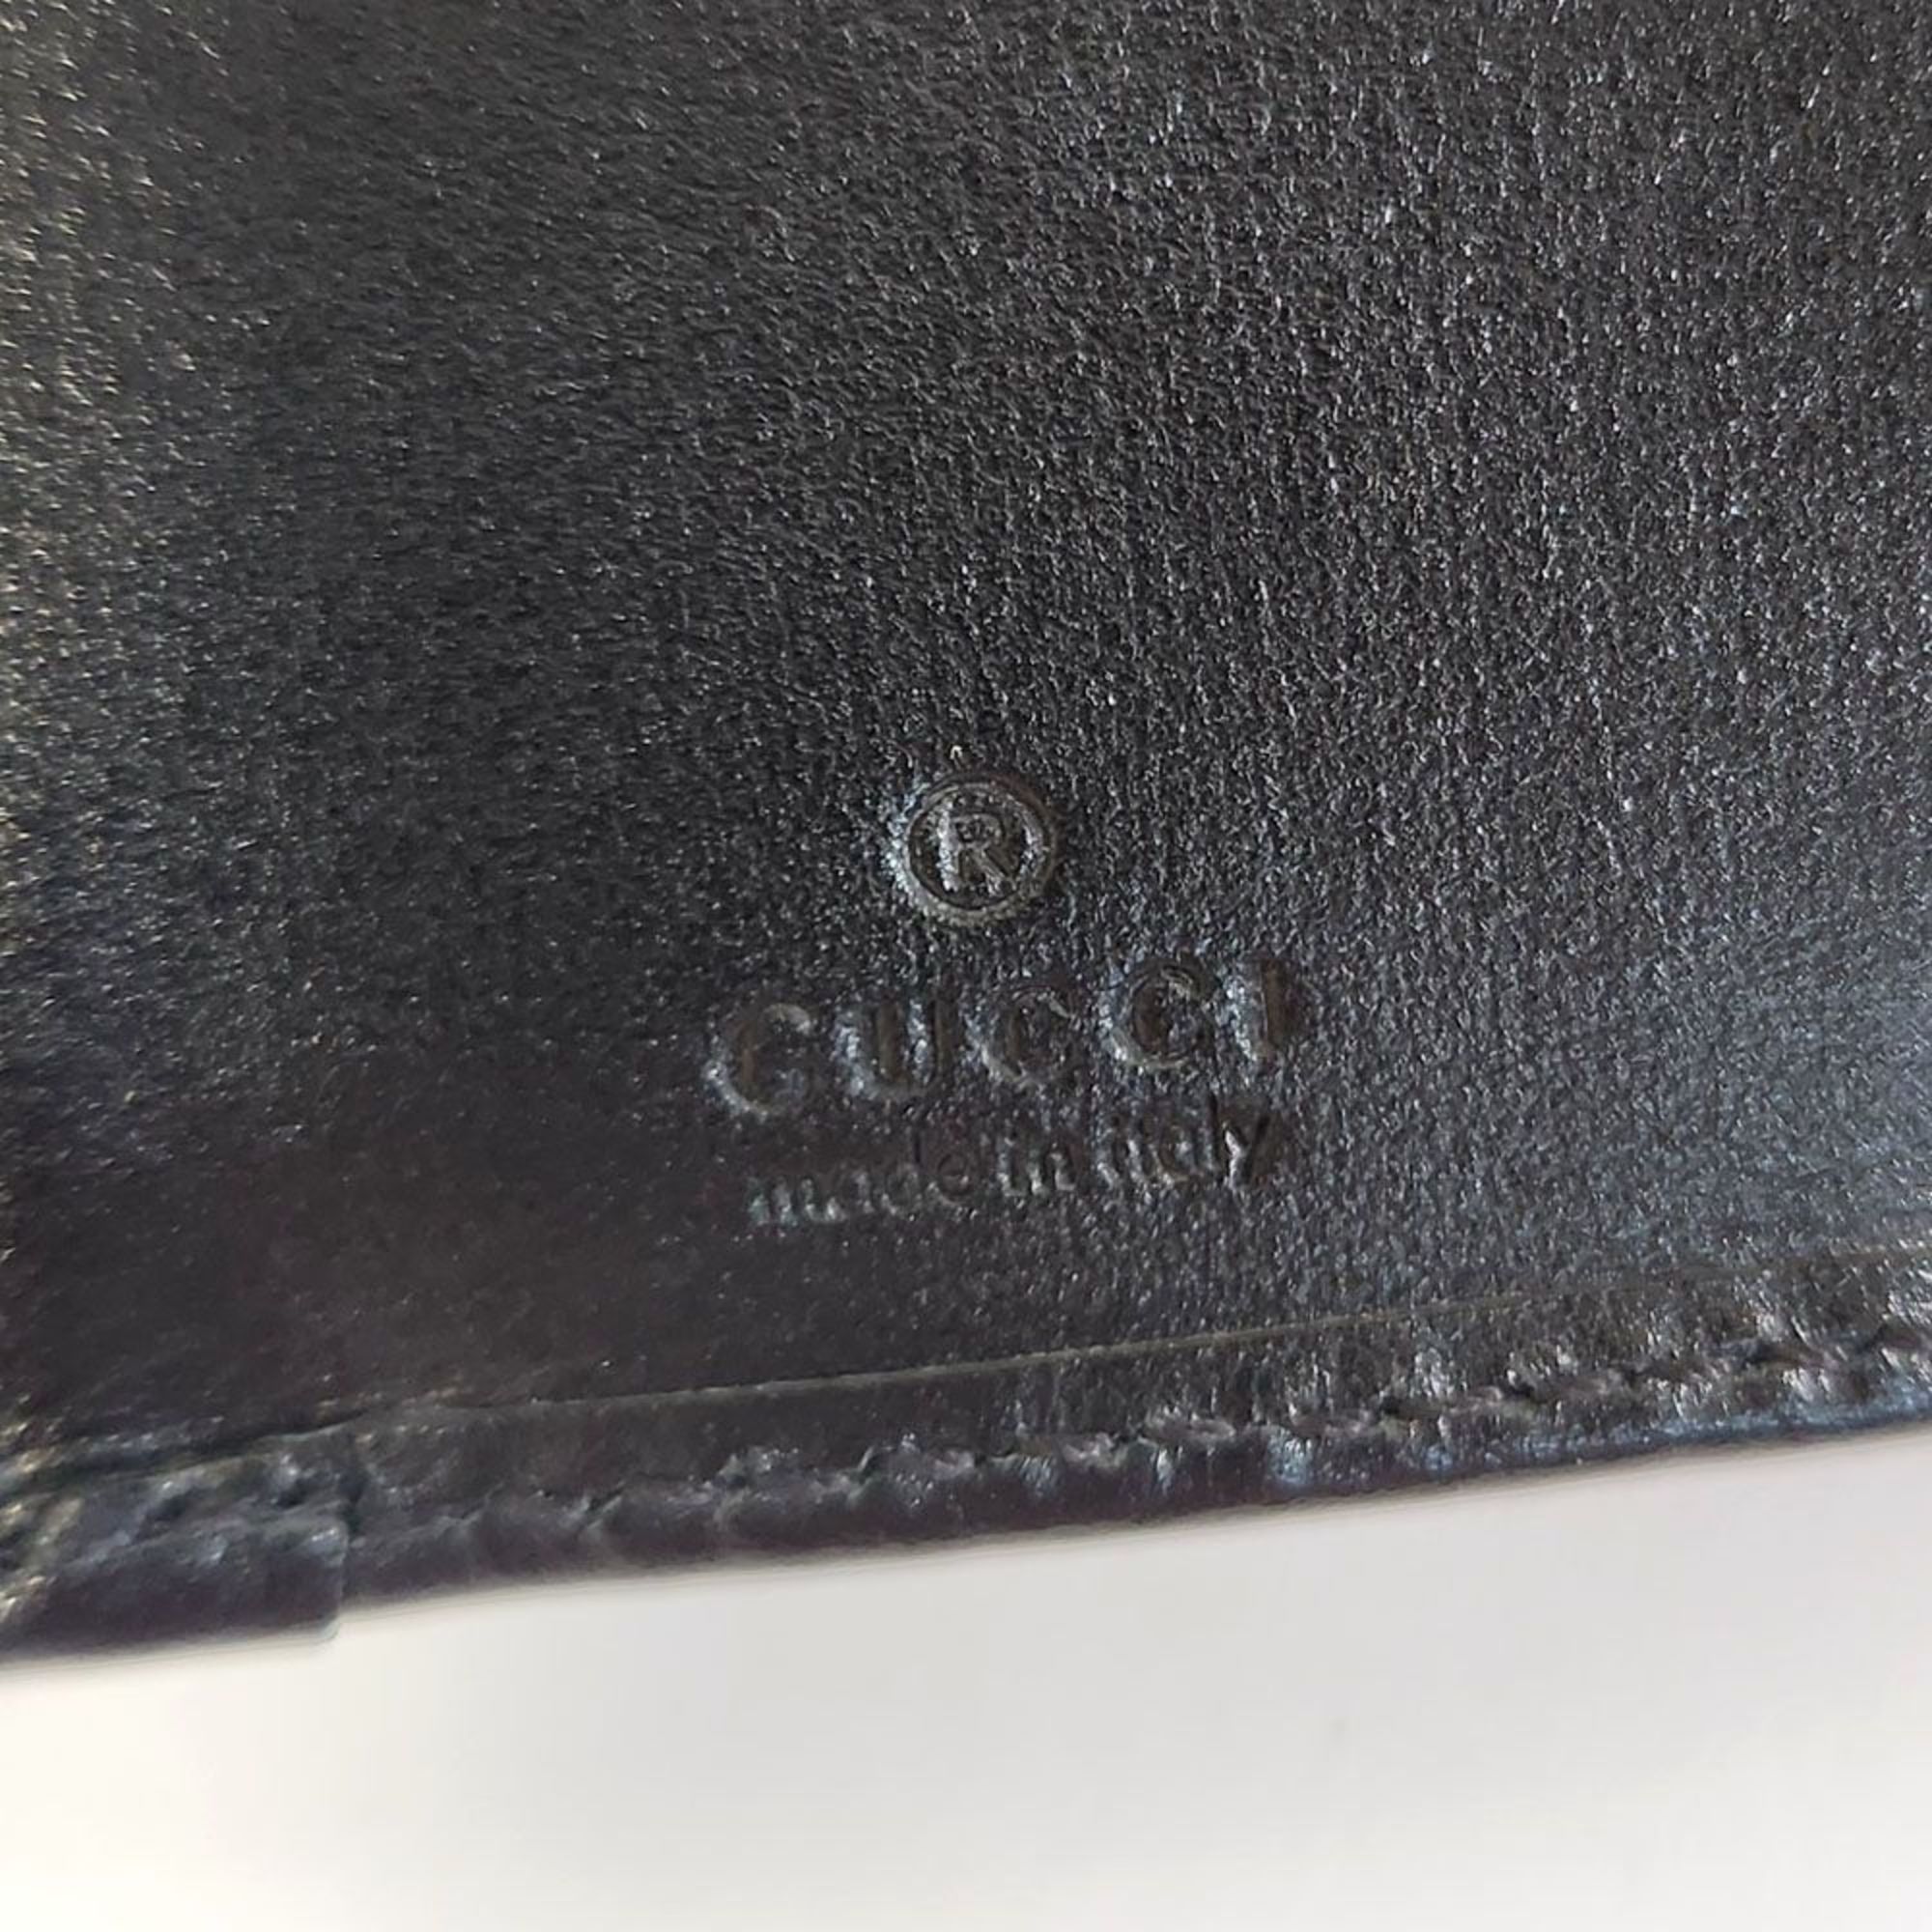 GUCCI Horsebit Tri-fold Wallet Compact Black 644462 Calf Bit